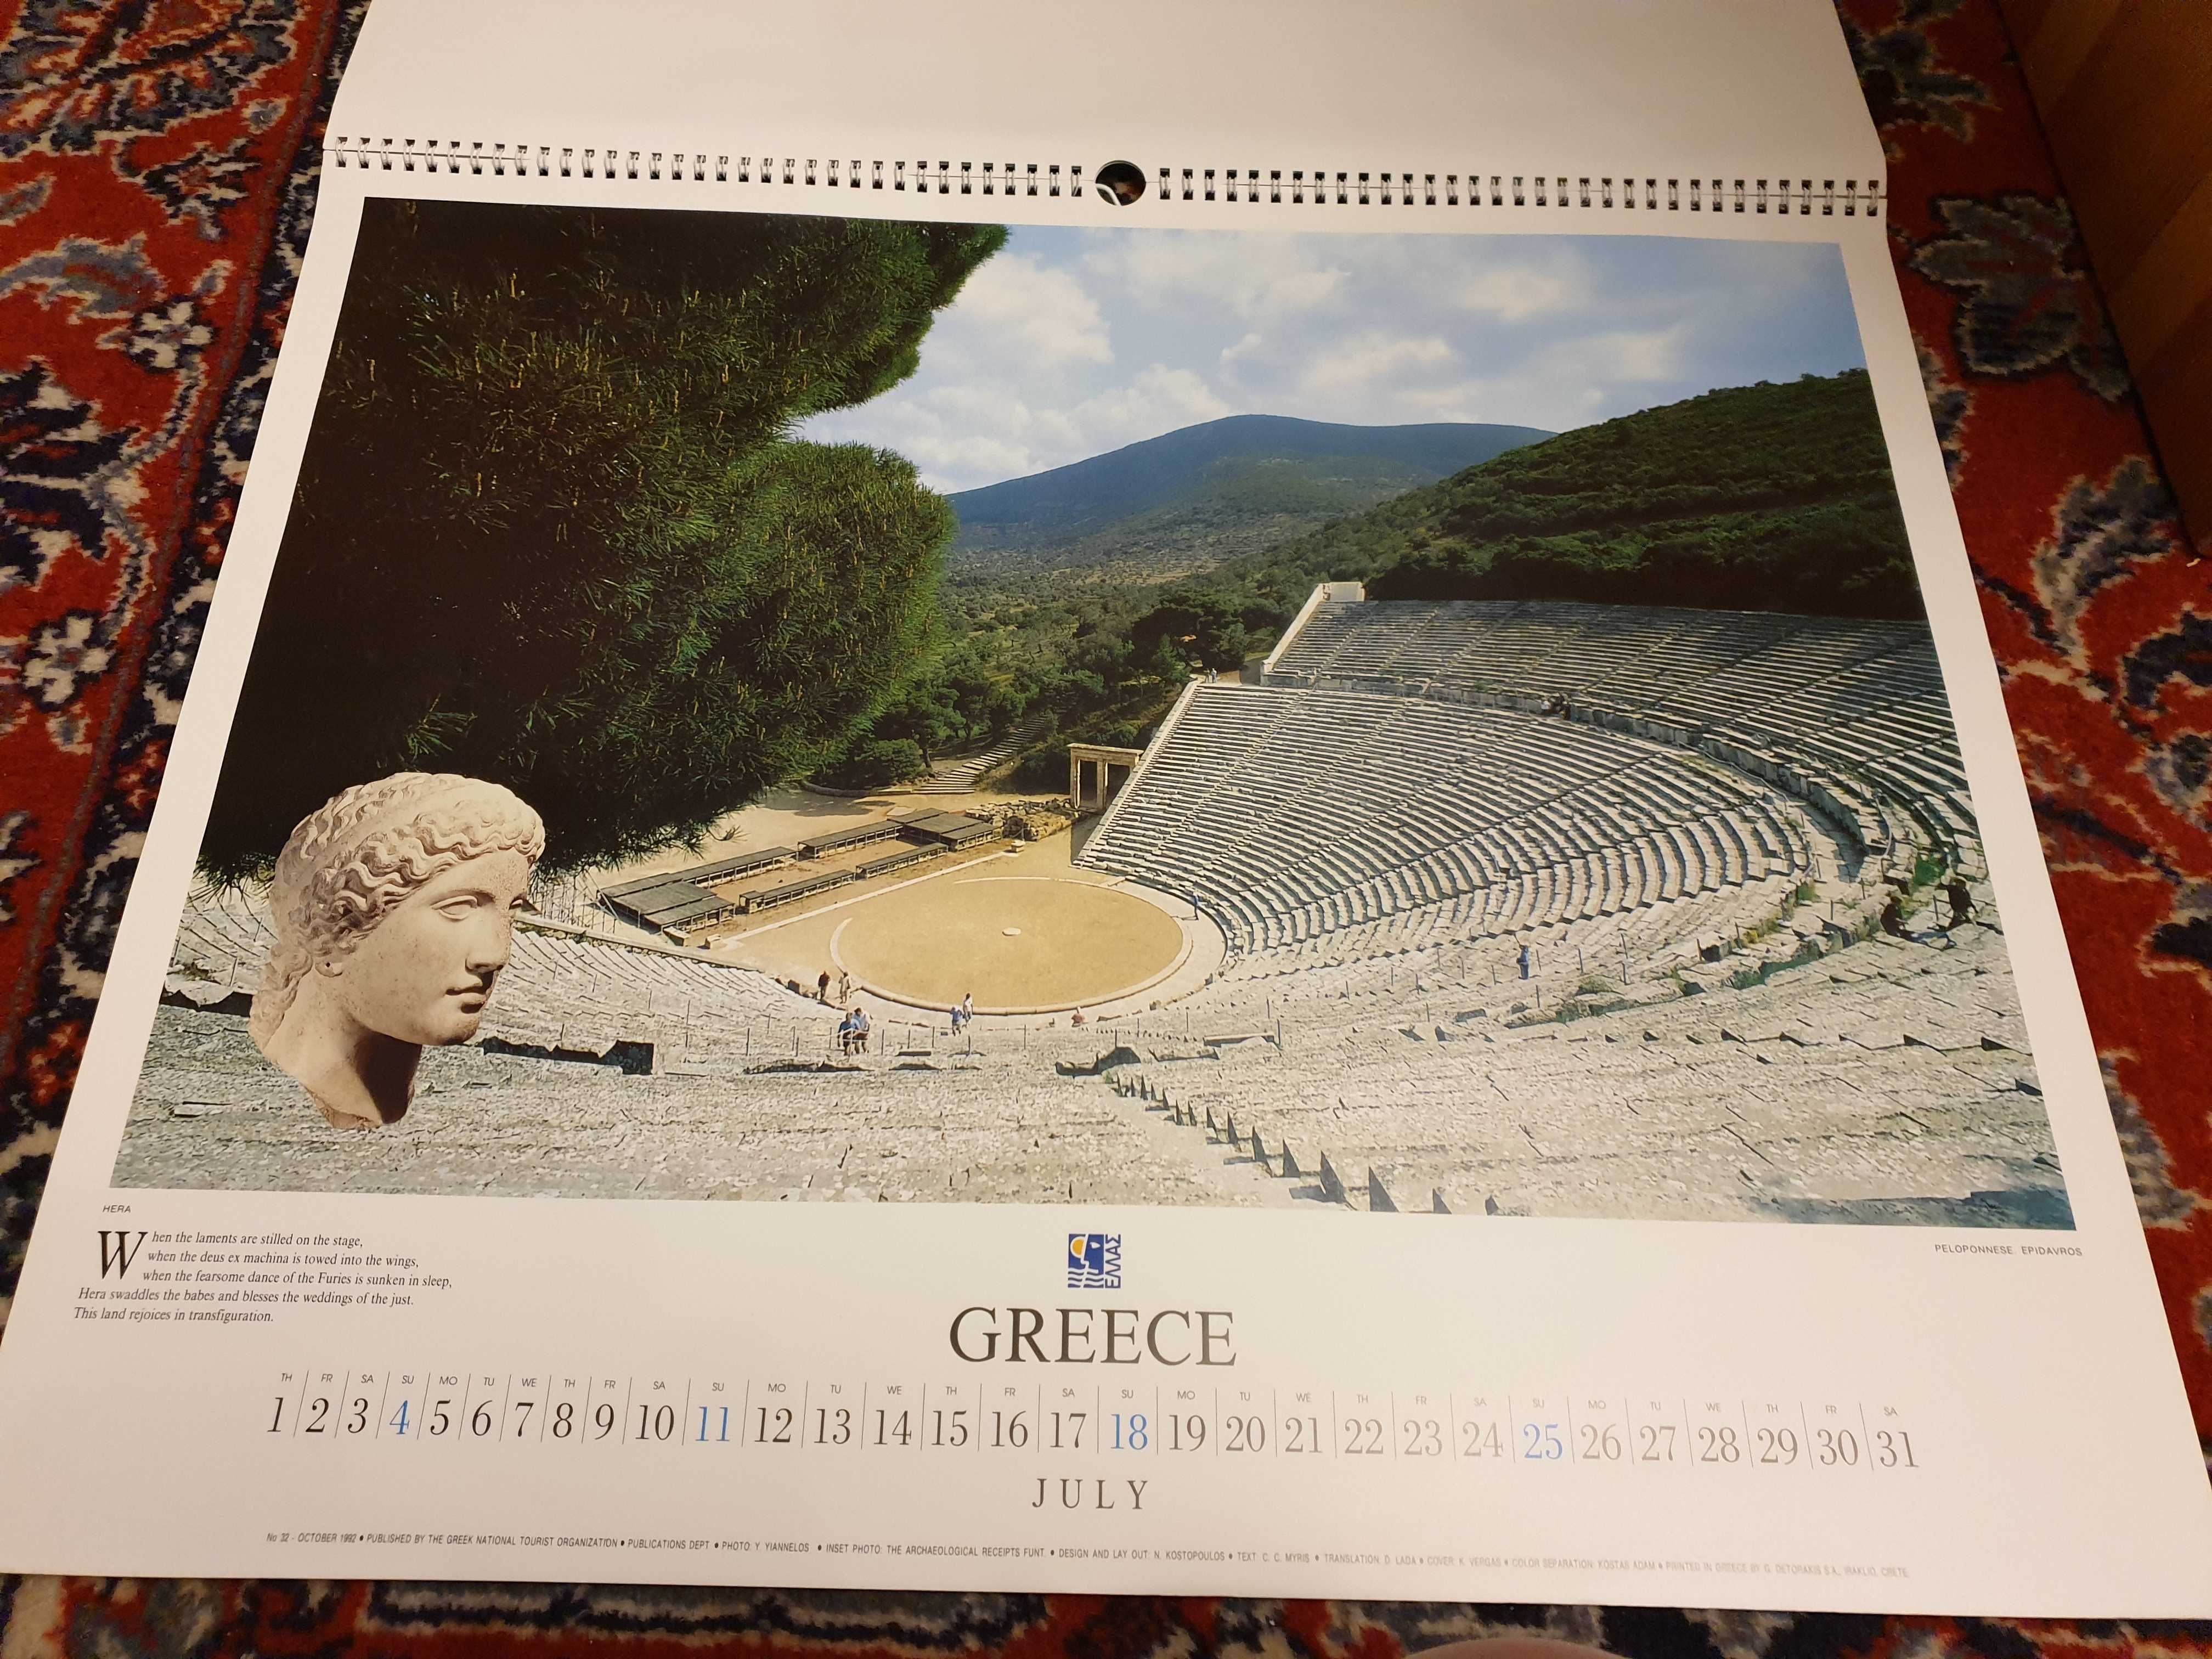 Kalendarz Grecja, zdjęcia, widoki